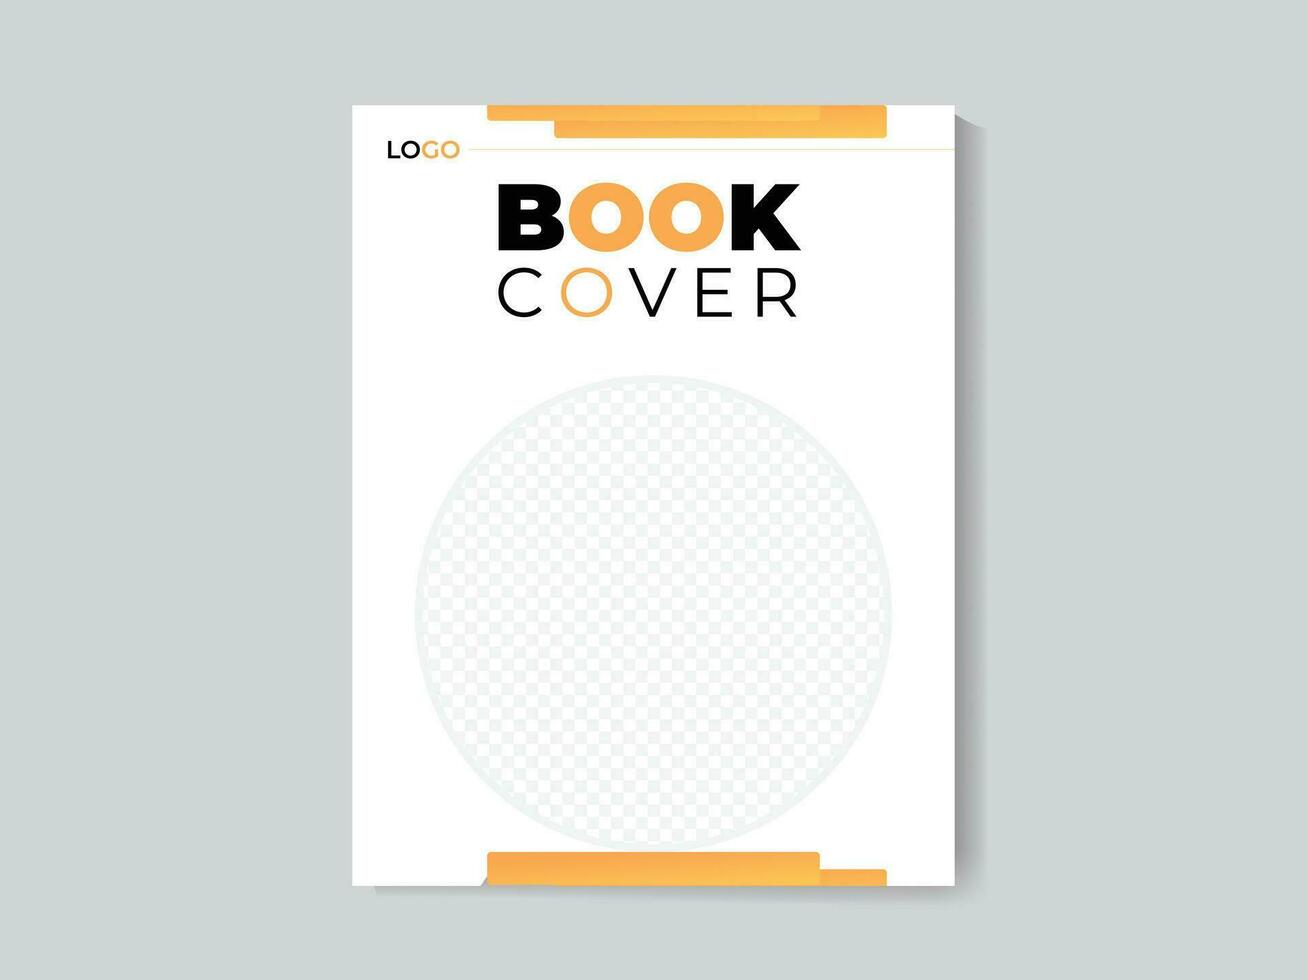 modèle de conception de couverture de livre d'entreprise vecteur